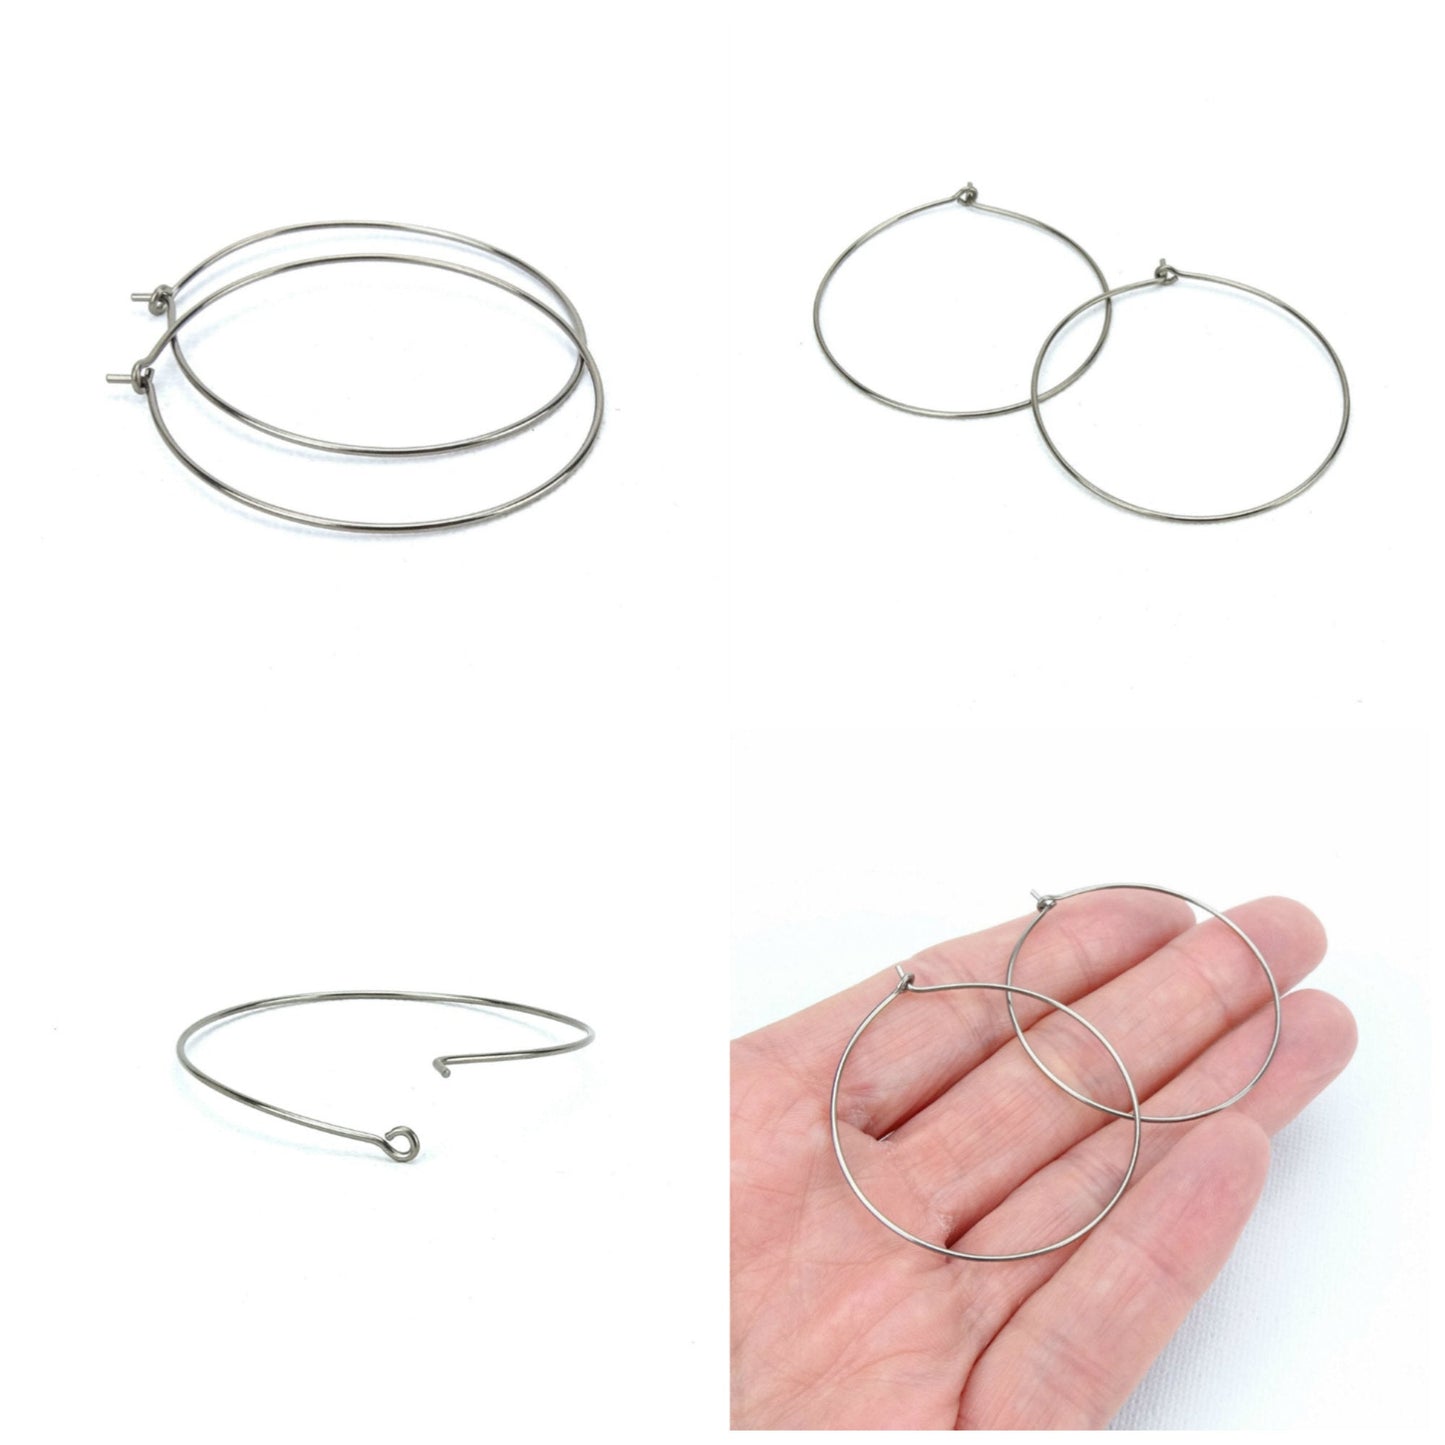 Niobium Hoop Earrings Extra Large, 1.5 Inch Hoops Earring, Hypoallergenic Hoops for Sensitive Ears, Silver Color Nickel Free Jewellery